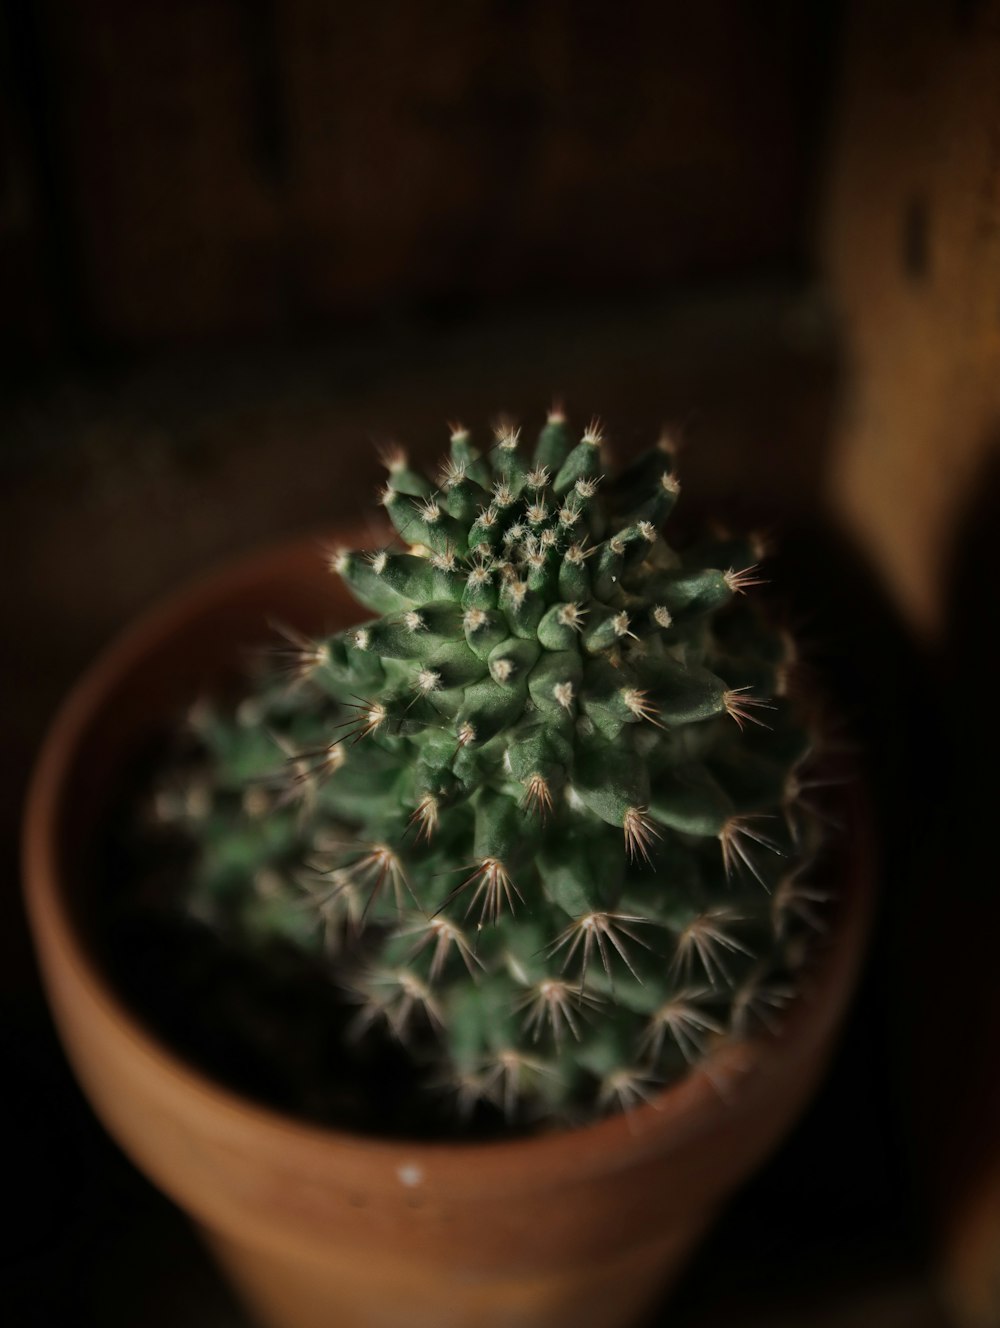 plante de cactus vert dans un pot en argile brune